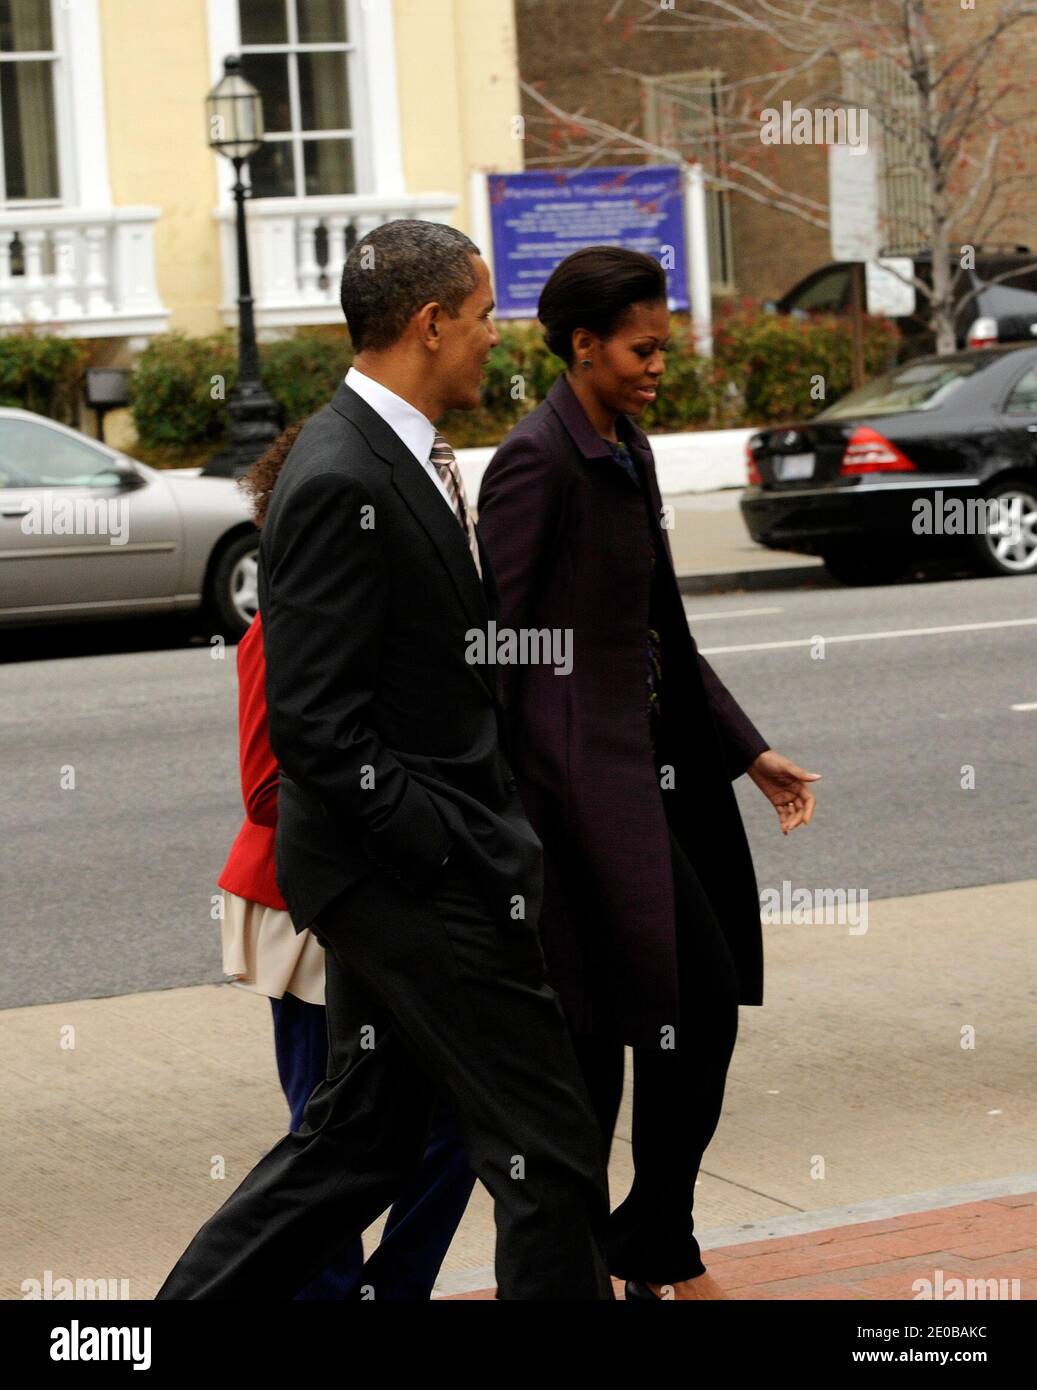 US-Präsident Barack Obama, First Lady Michelle Obama und Tochter Sasha Obama verlassen nach dem Gottesdienst in der St. John's Church am Sonntag, 18. März 2012, in Washington, DC. Foto von Leslie E. Kossopf/Pool/ABACAPRESS.COM Stockfoto